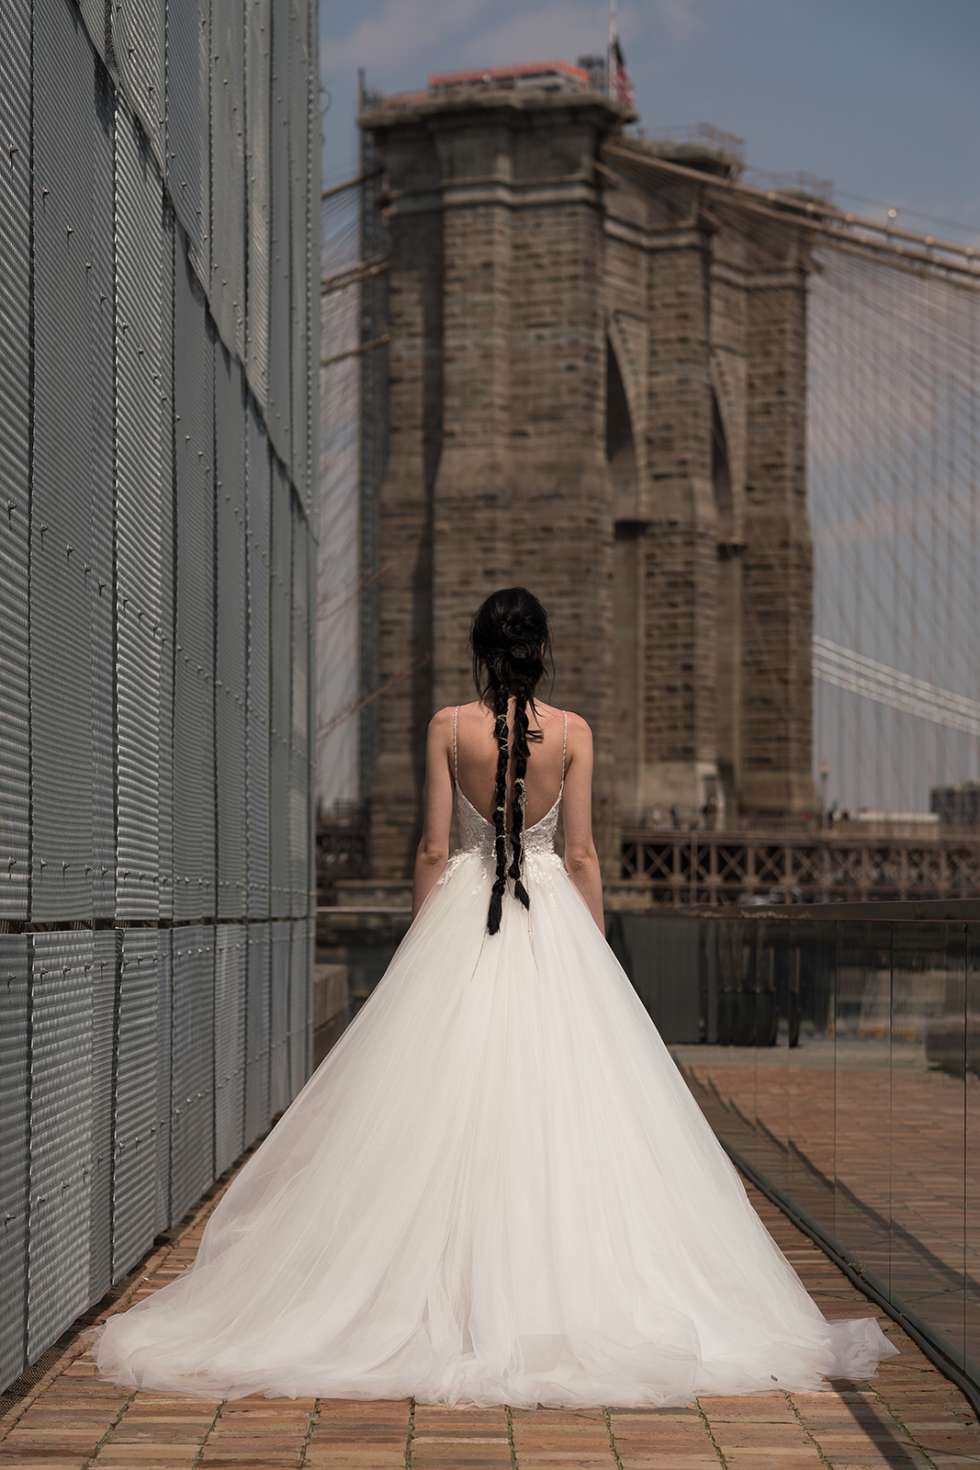 أحدث مجموعات فساتين الزفاف لعام 2019 من تصميم ريتا فينيريس